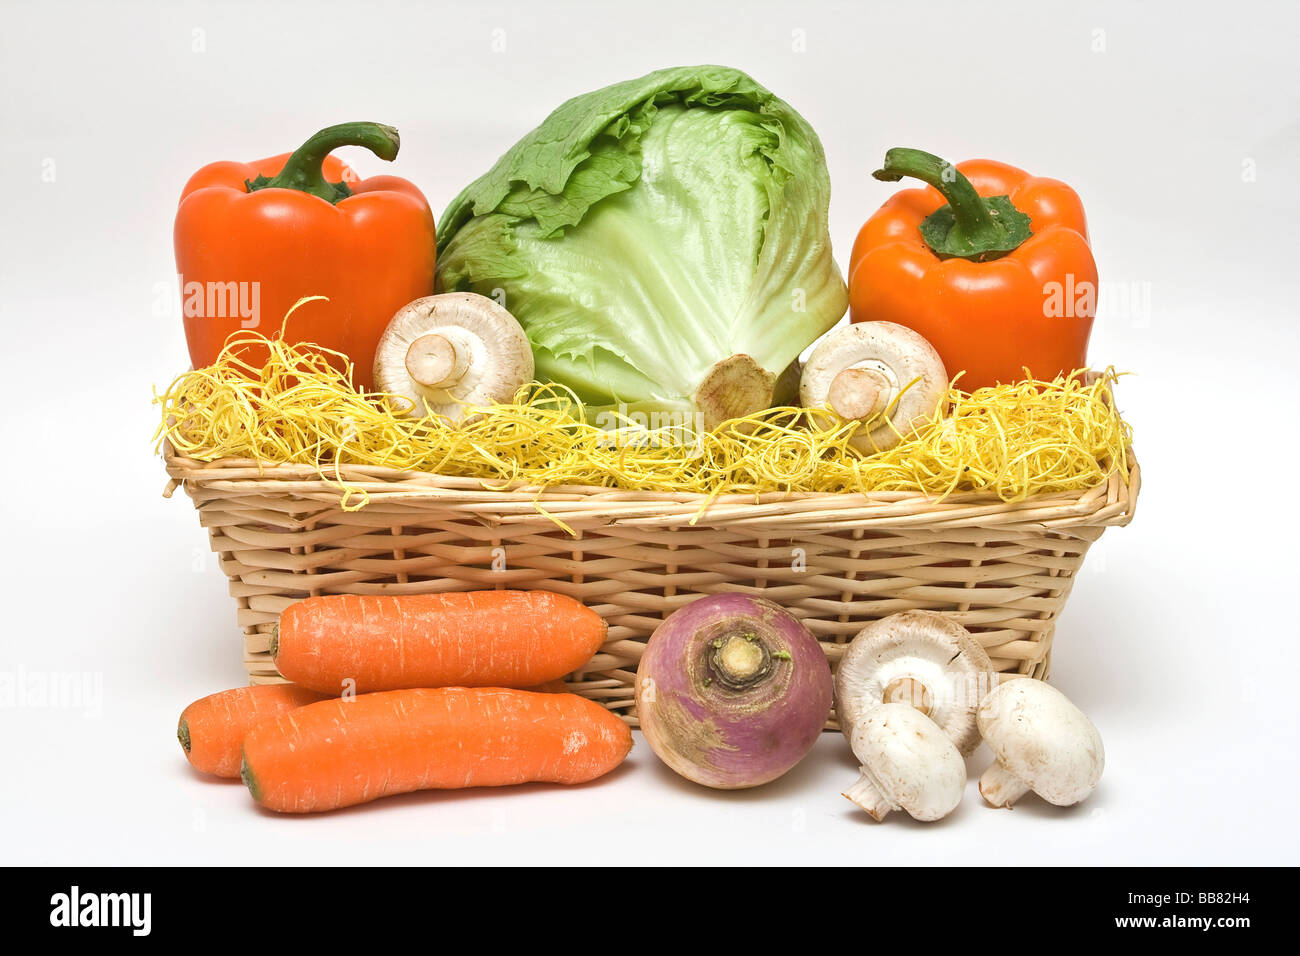 Coloured vegetable basket, iceberg lettuce, orange bell peppers, mushrooms,  fresh carrots, round raddish Stock Photo - Alamy